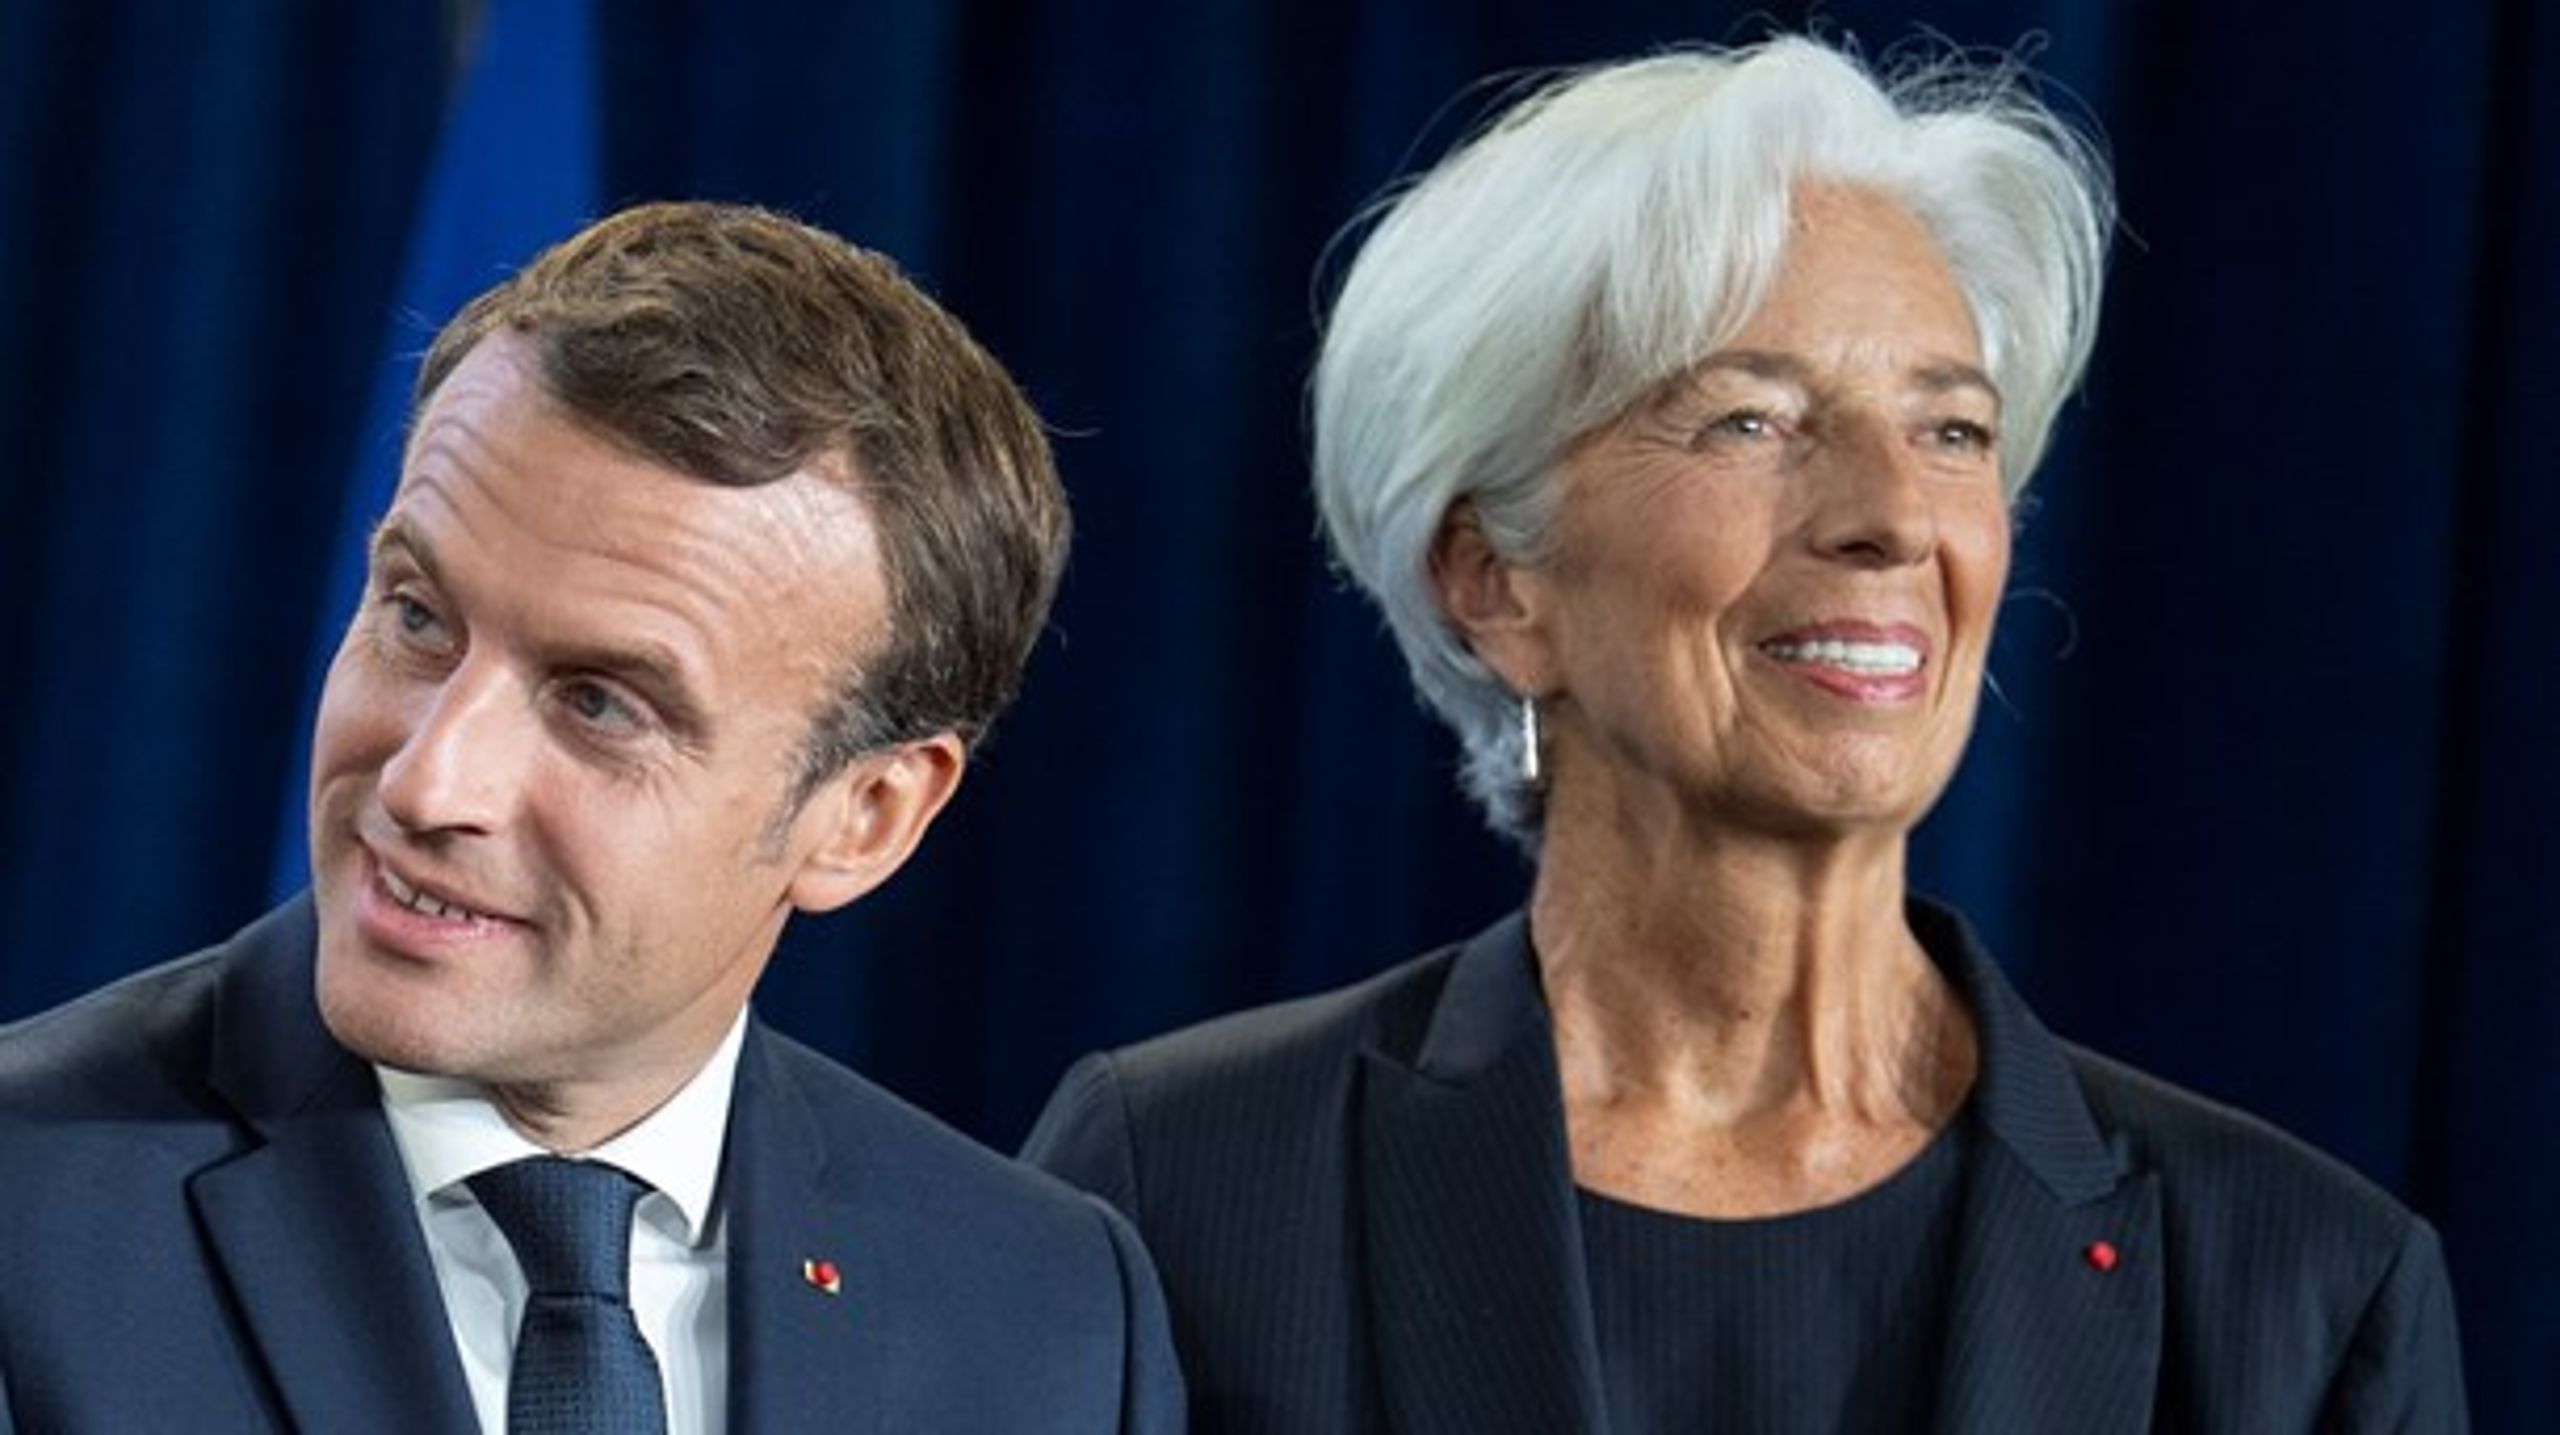 Den nyudpegede ECB-præsident, Christine Lagarde, har opfordret de europæiske regeringer til at åbne op for en mere ekspansiv finanspolitik, skriver postdoc.